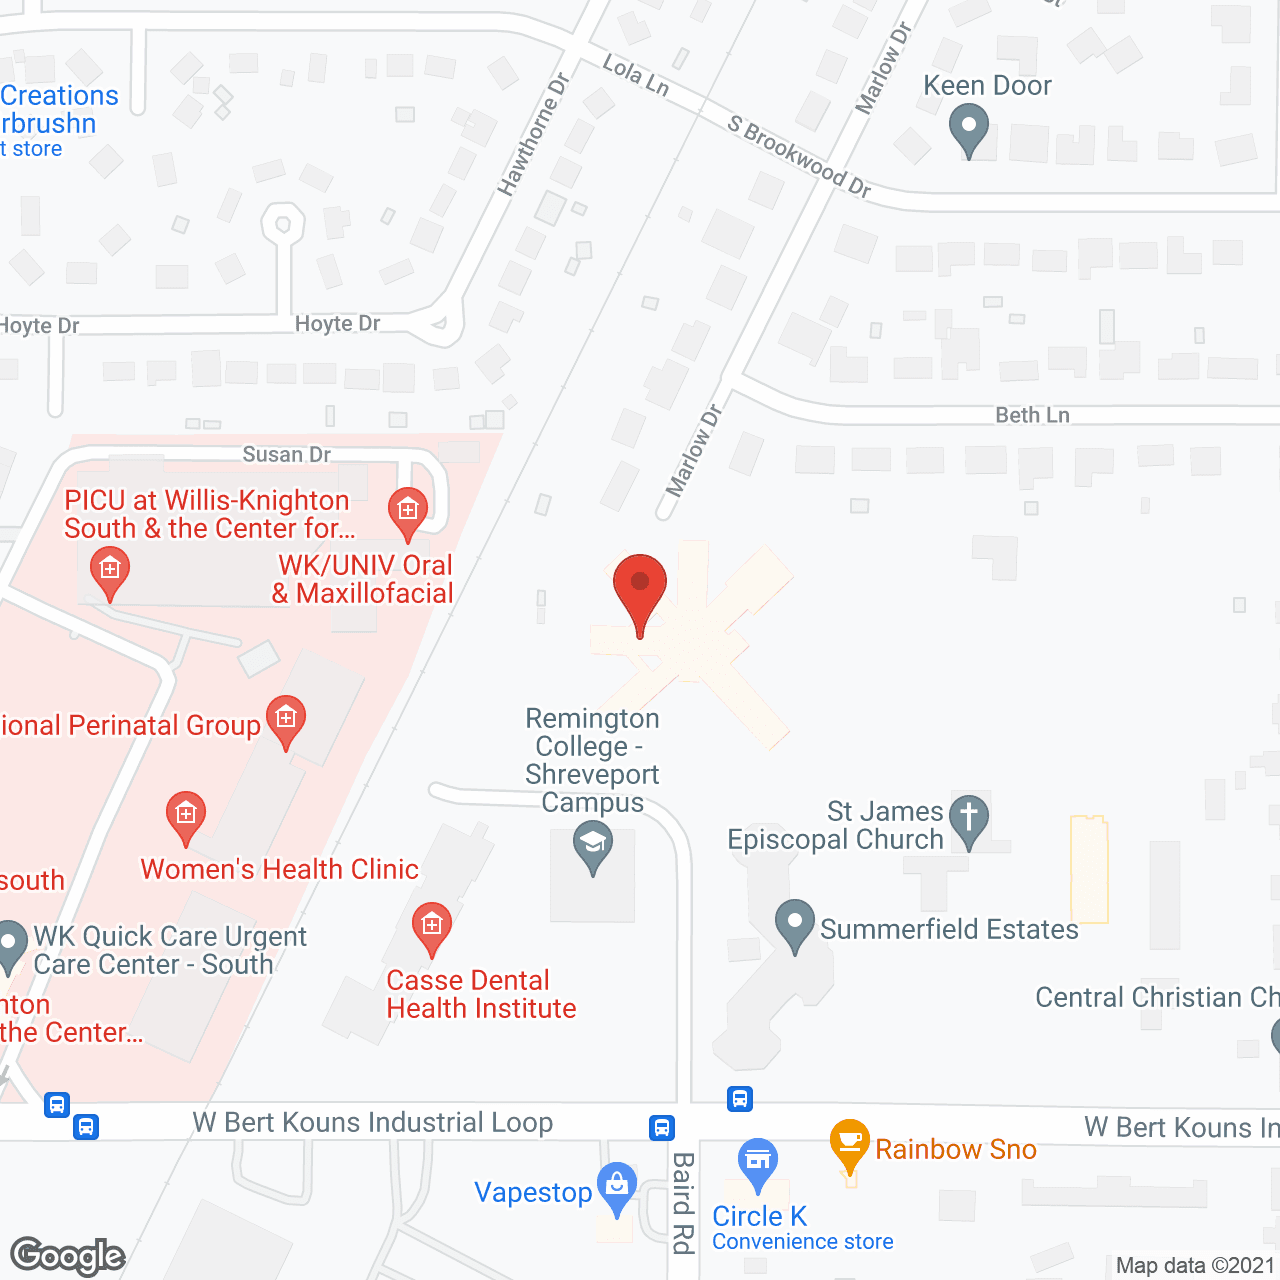 Landmark in google map